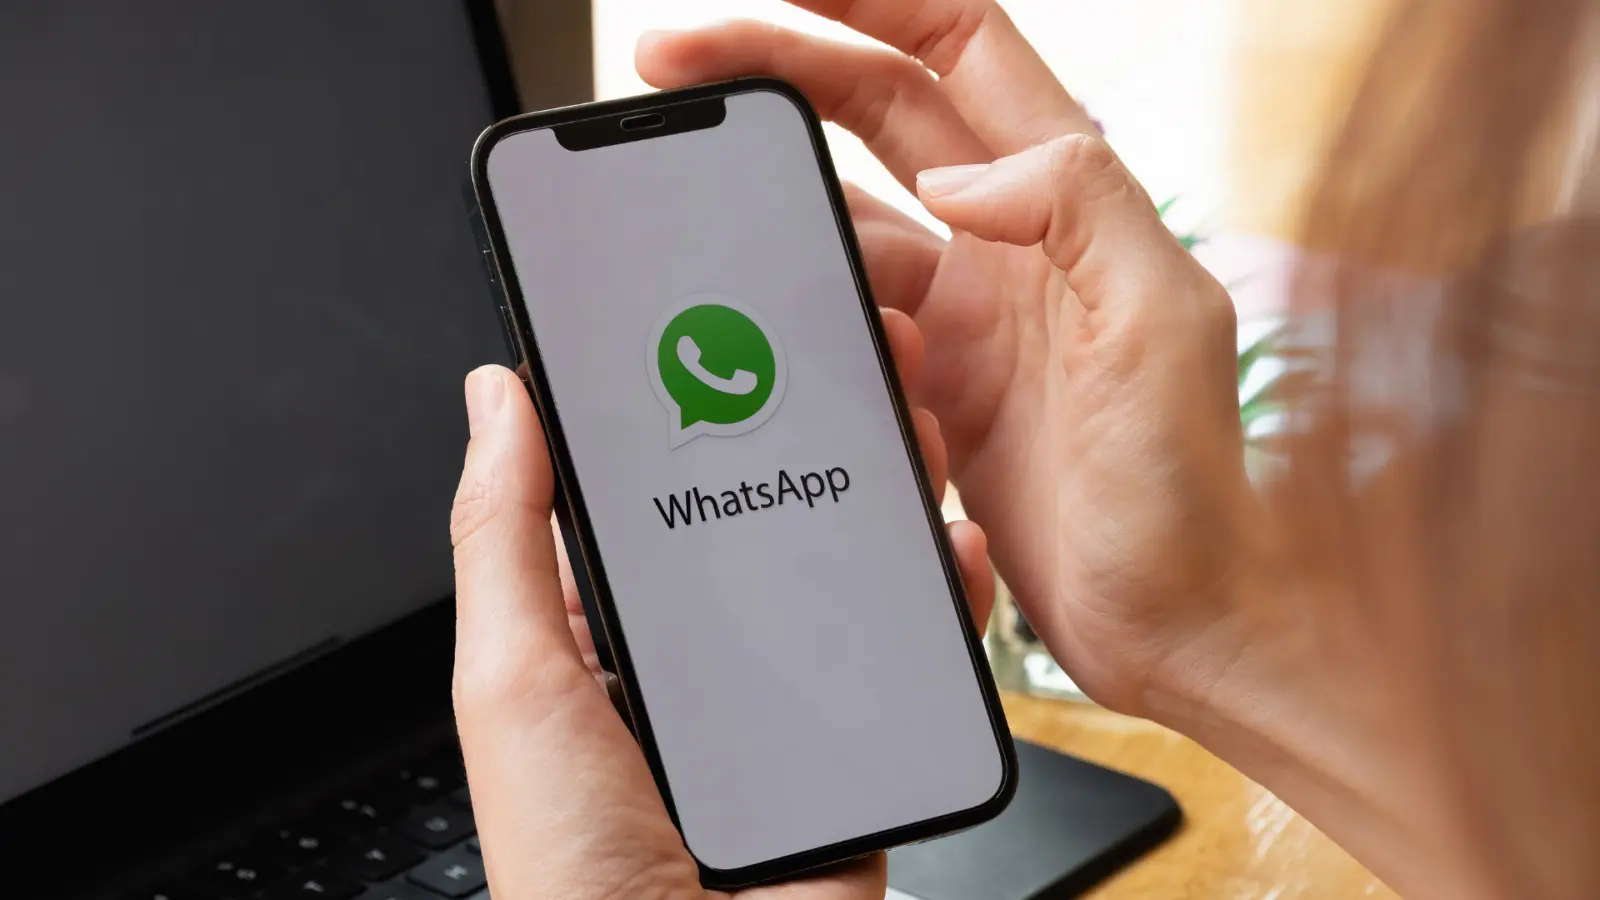 ¿Está prohibido WhatsApp?  Aquí hay 4 trucos para averiguarlo.